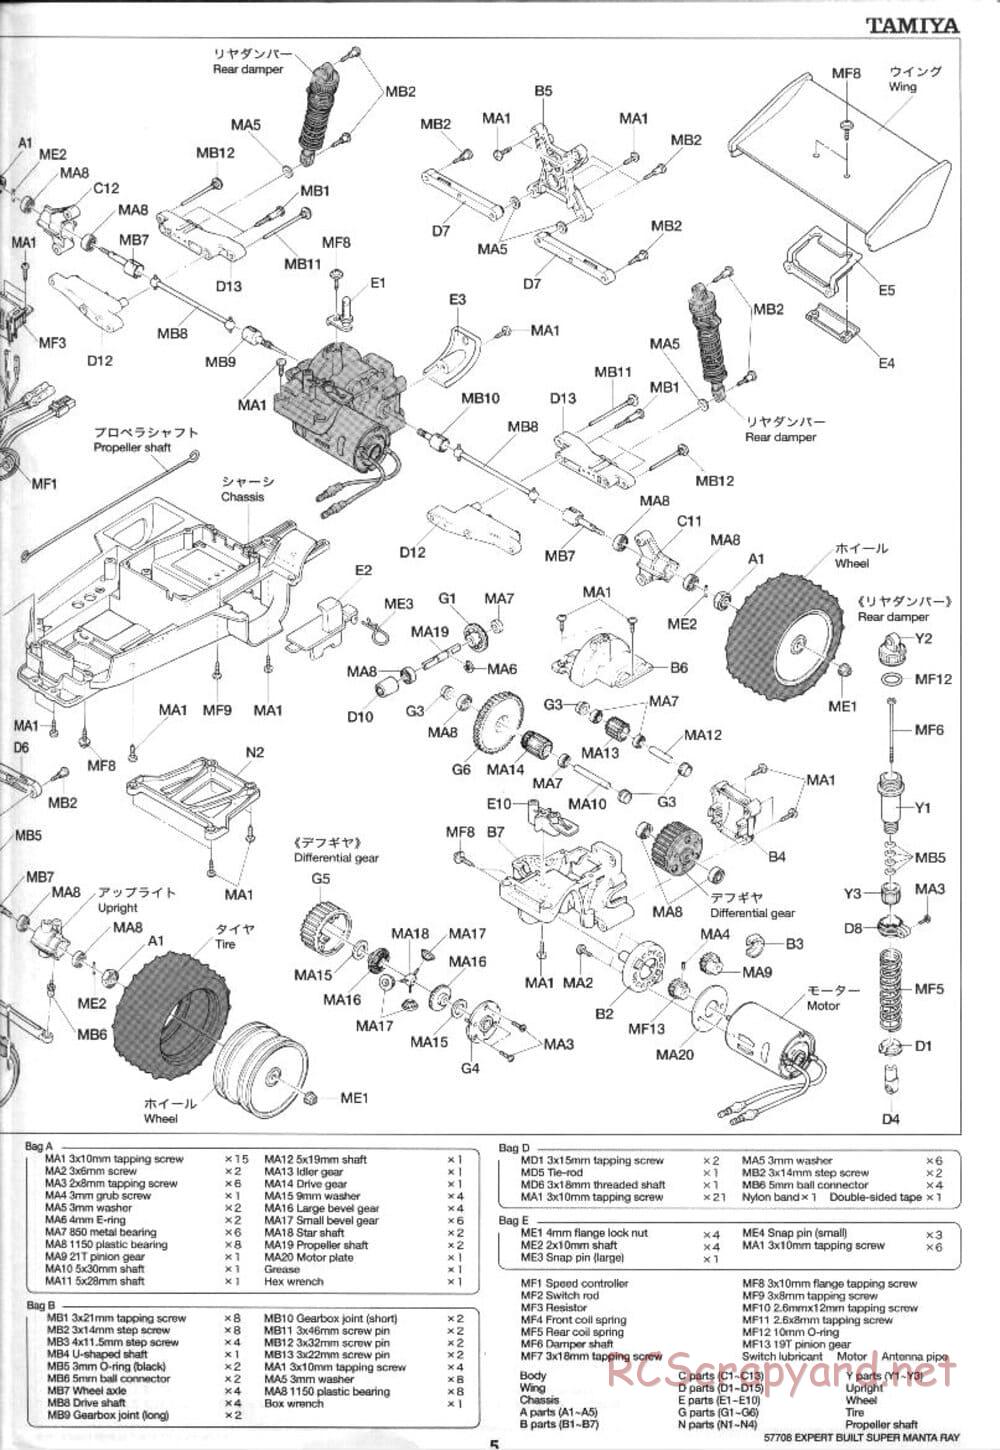 Tamiya - XB Super Manta Ray - DF-01 Chassis - Manual - Page 5